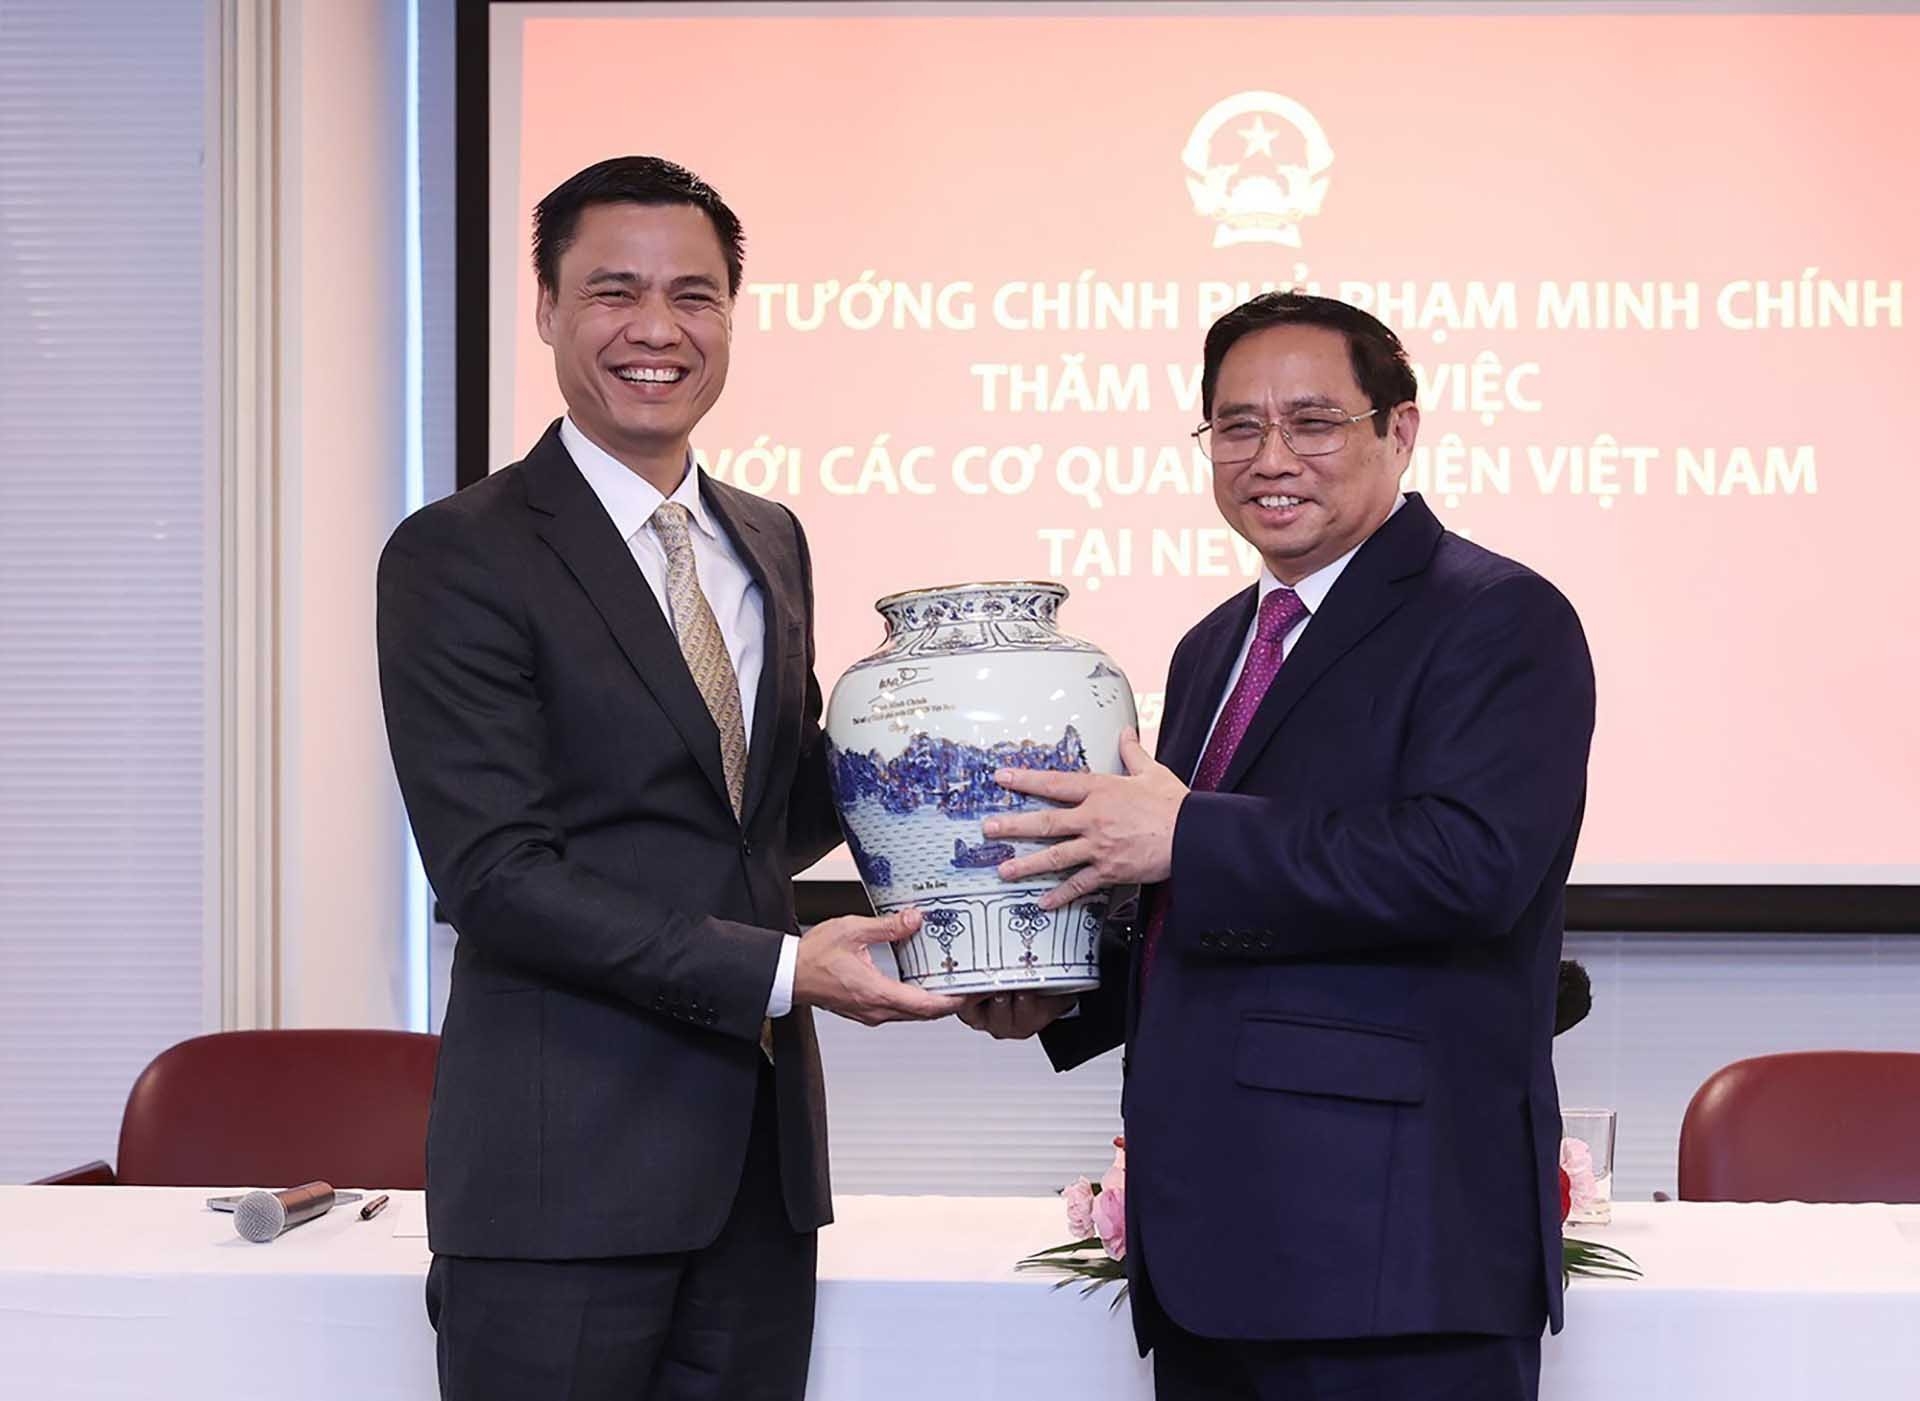 范明正总理向越南常驻联合国代表邓黄江大使赠送纪念品。